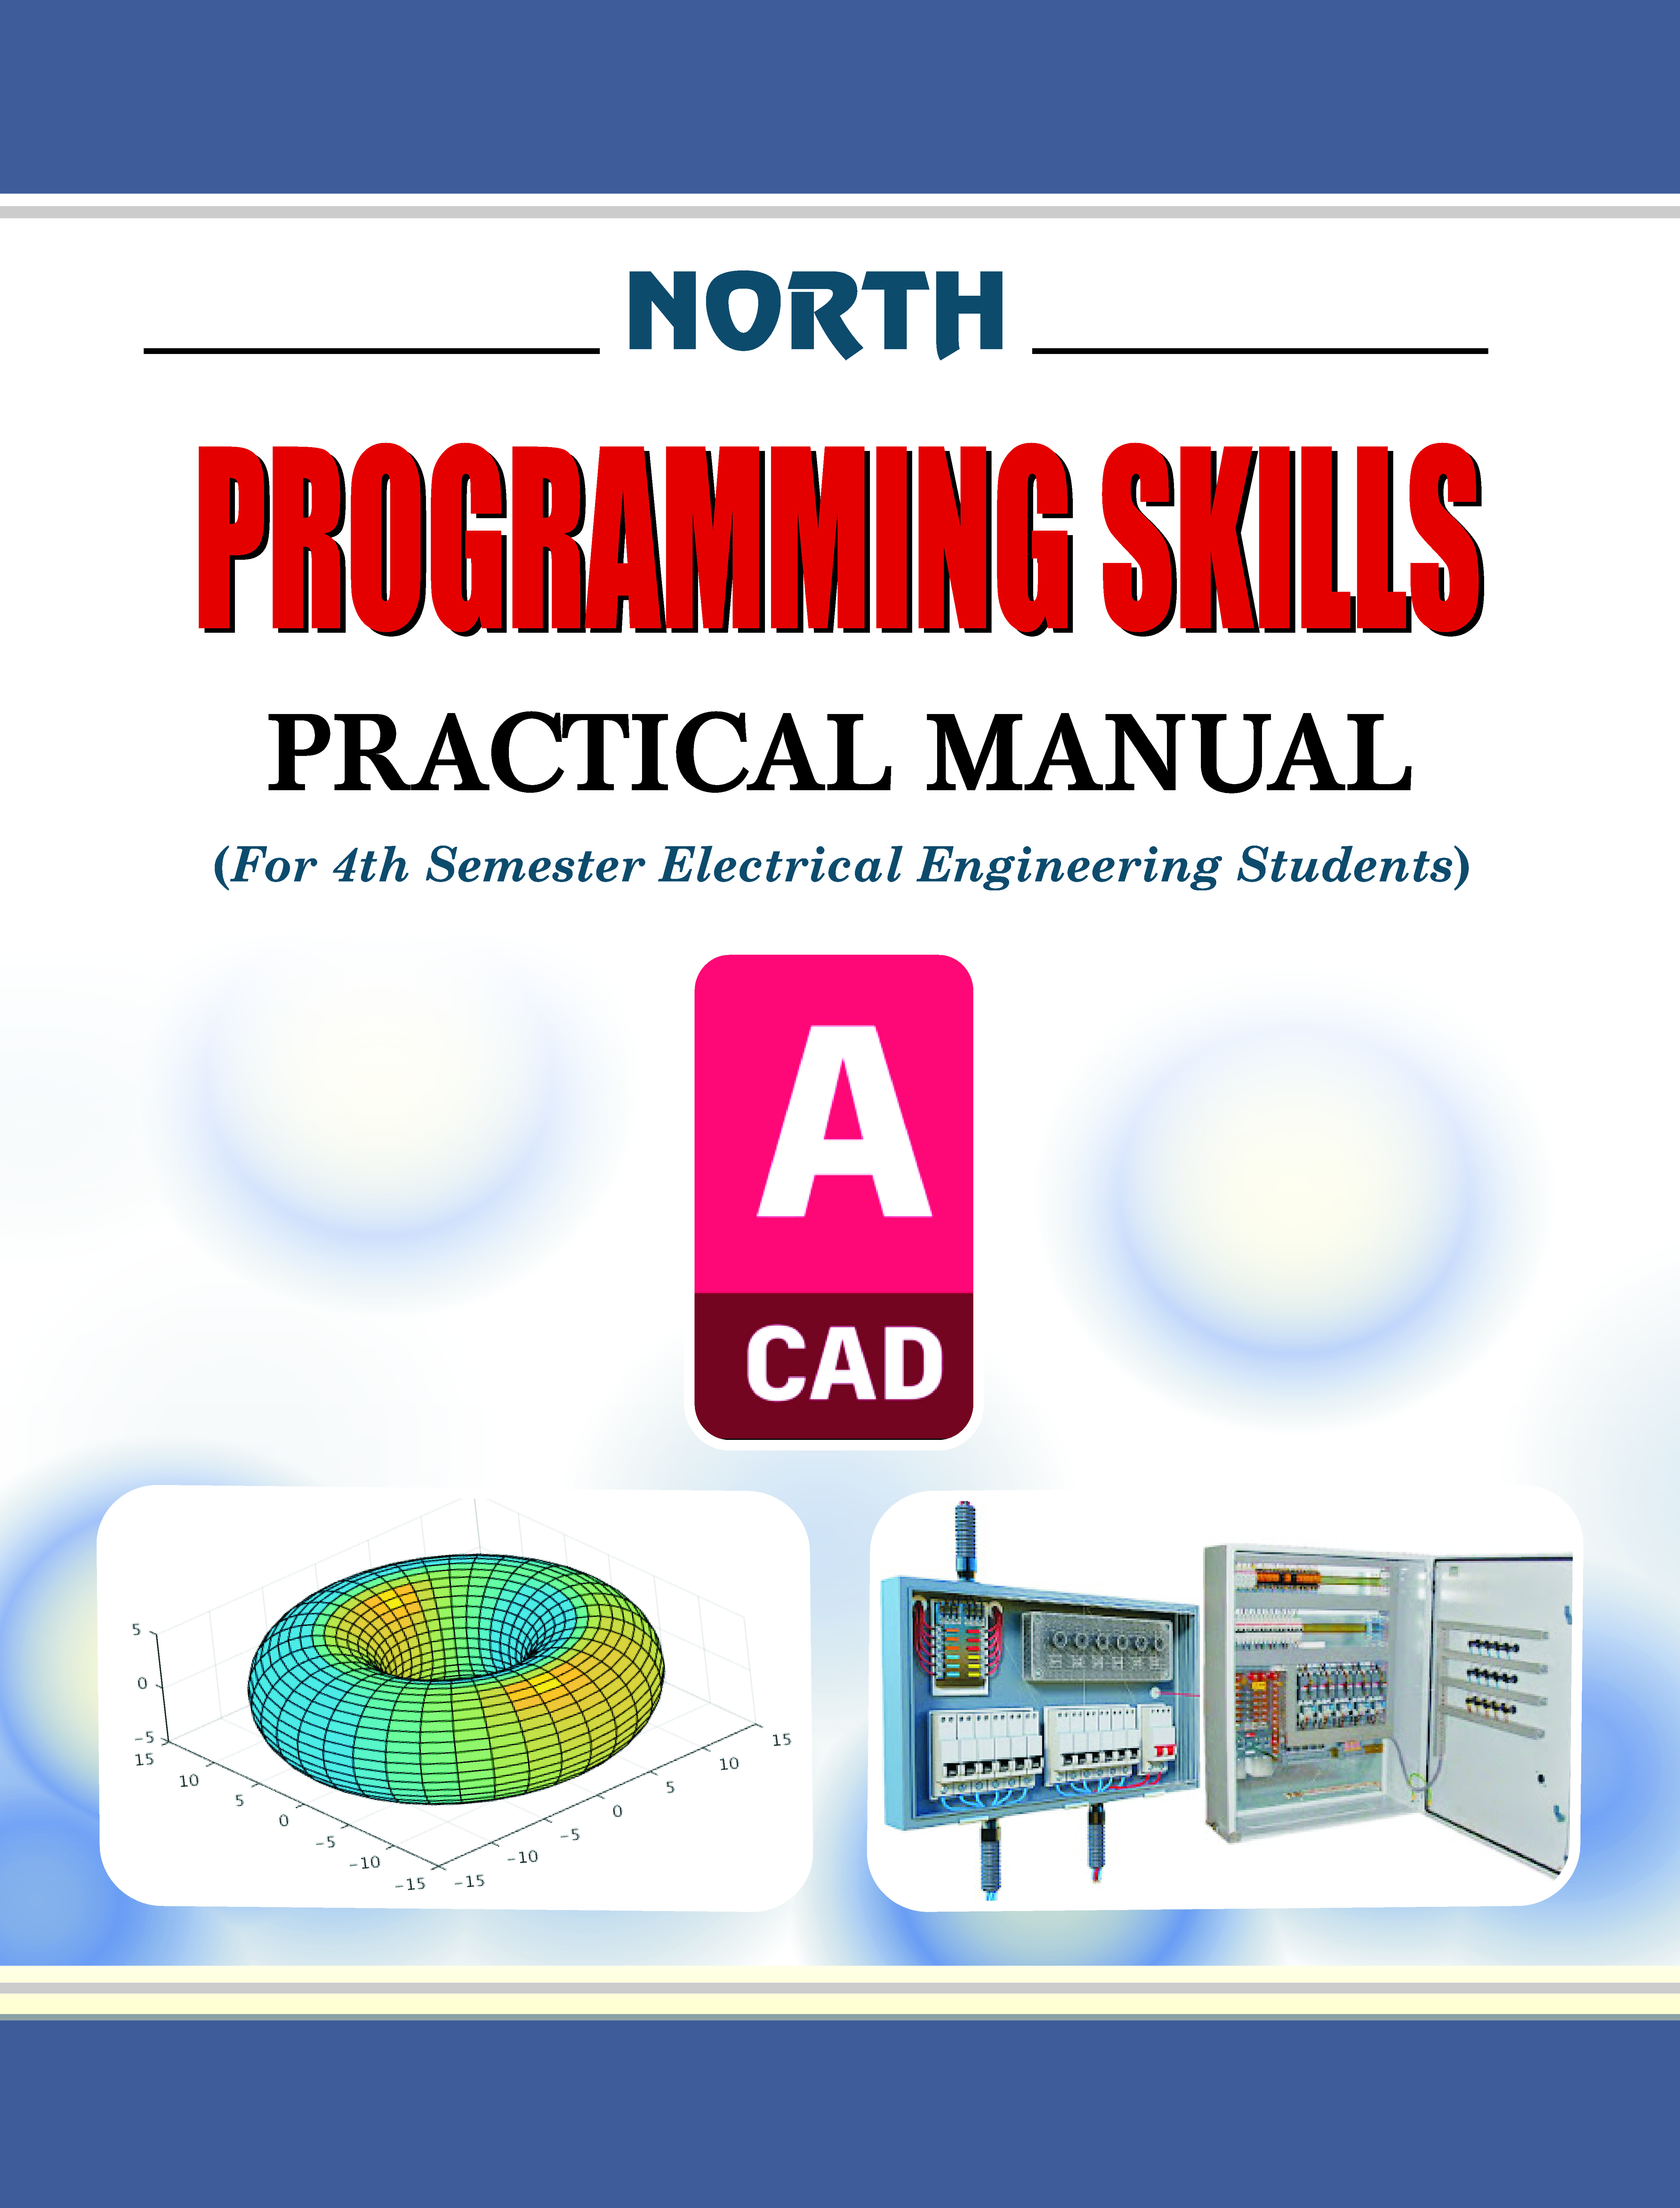 Programming Skills

Practical Manual